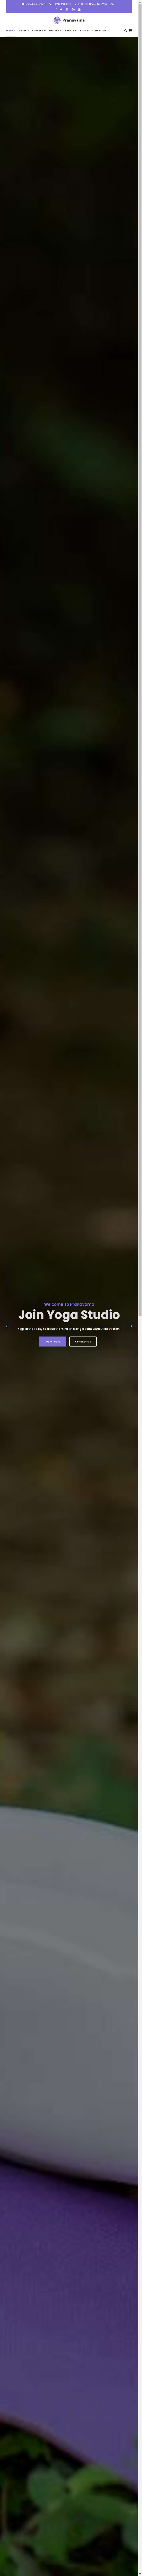 瑜伽课程培训网站模板